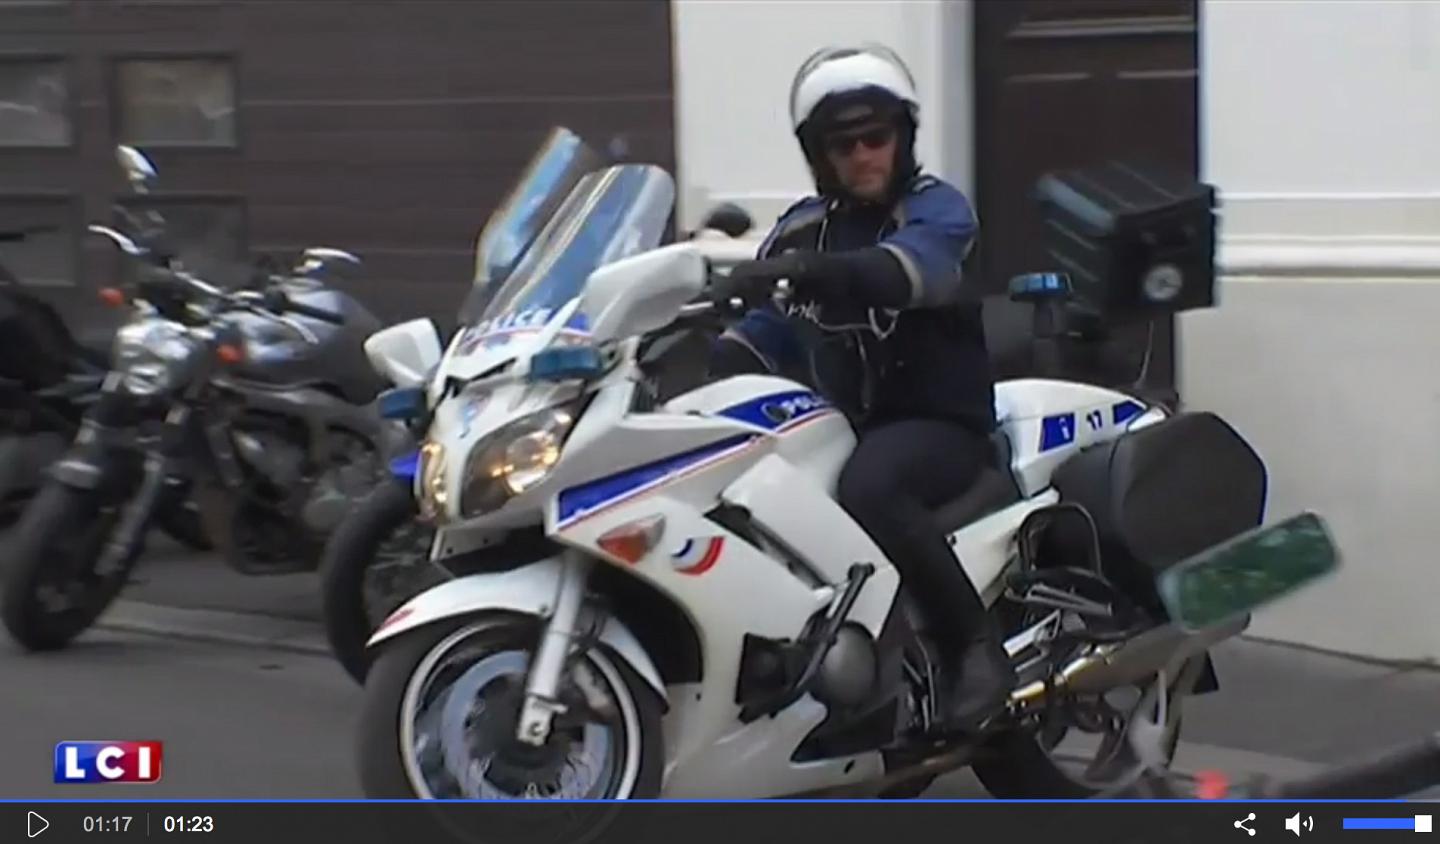 Nouvel équipement des motards de la police : ça coince (...)